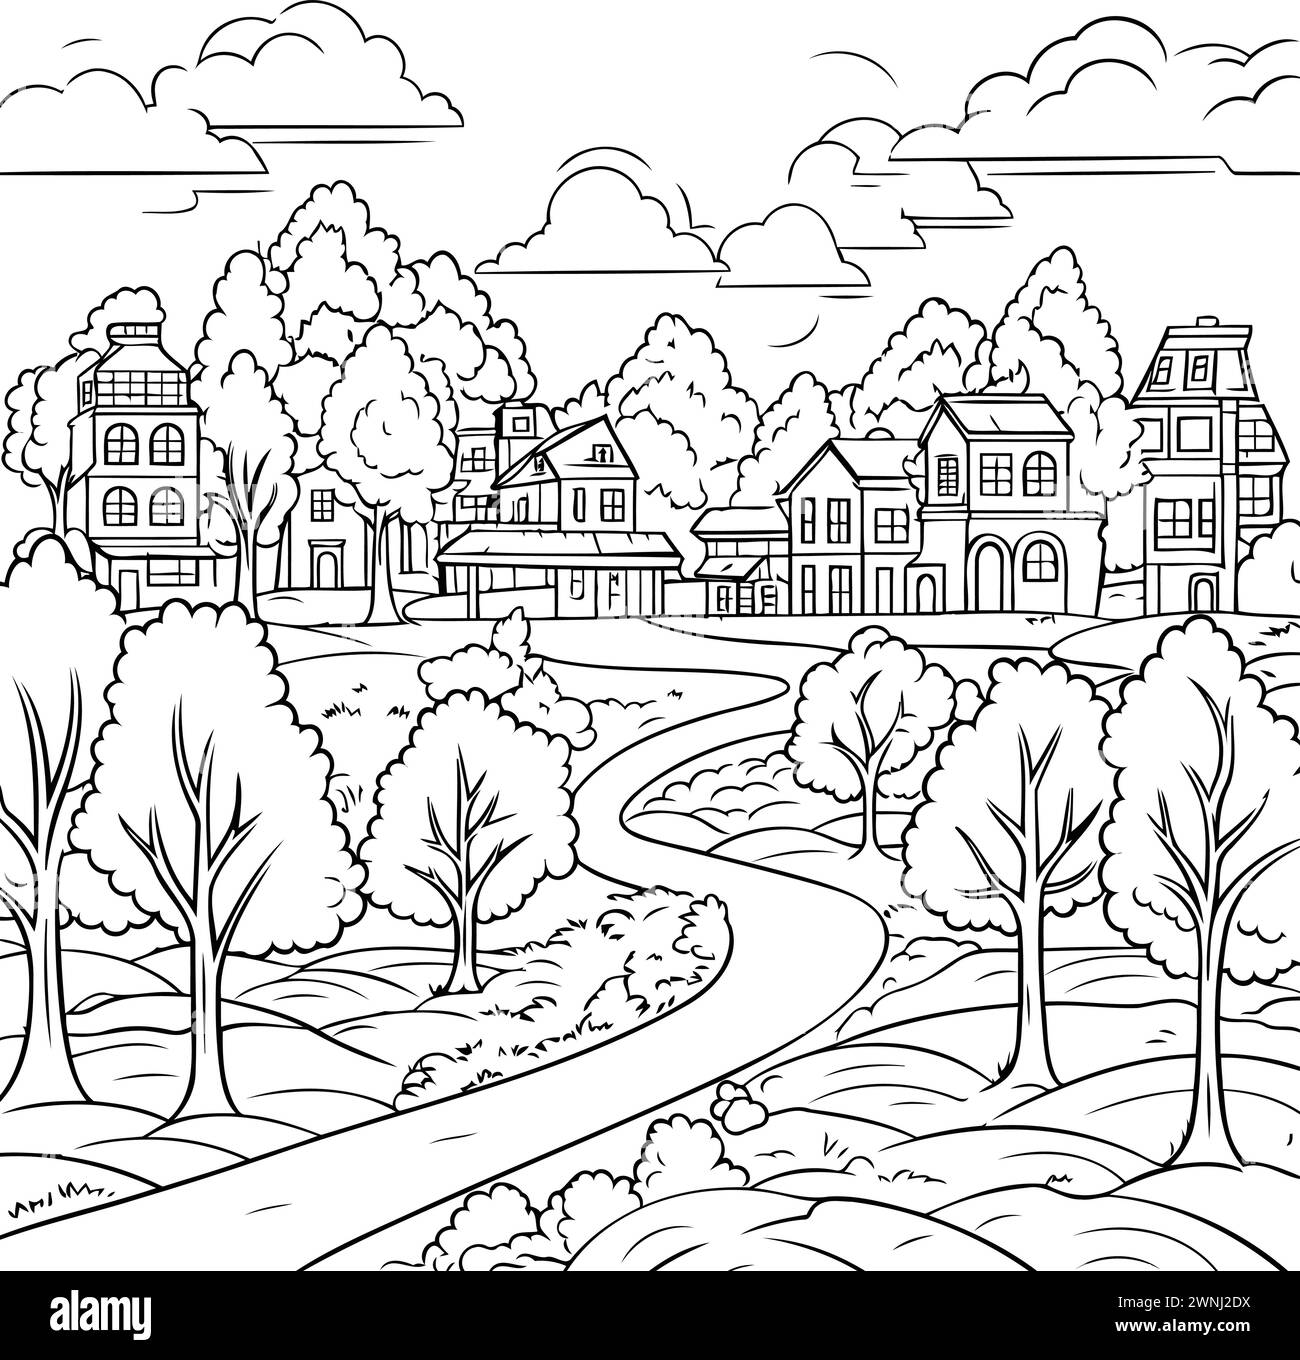 Wunderschöne Landschaft mit Häusern und Bäumen. Handgezeichnete Vektorgrafik. Stock Vektor